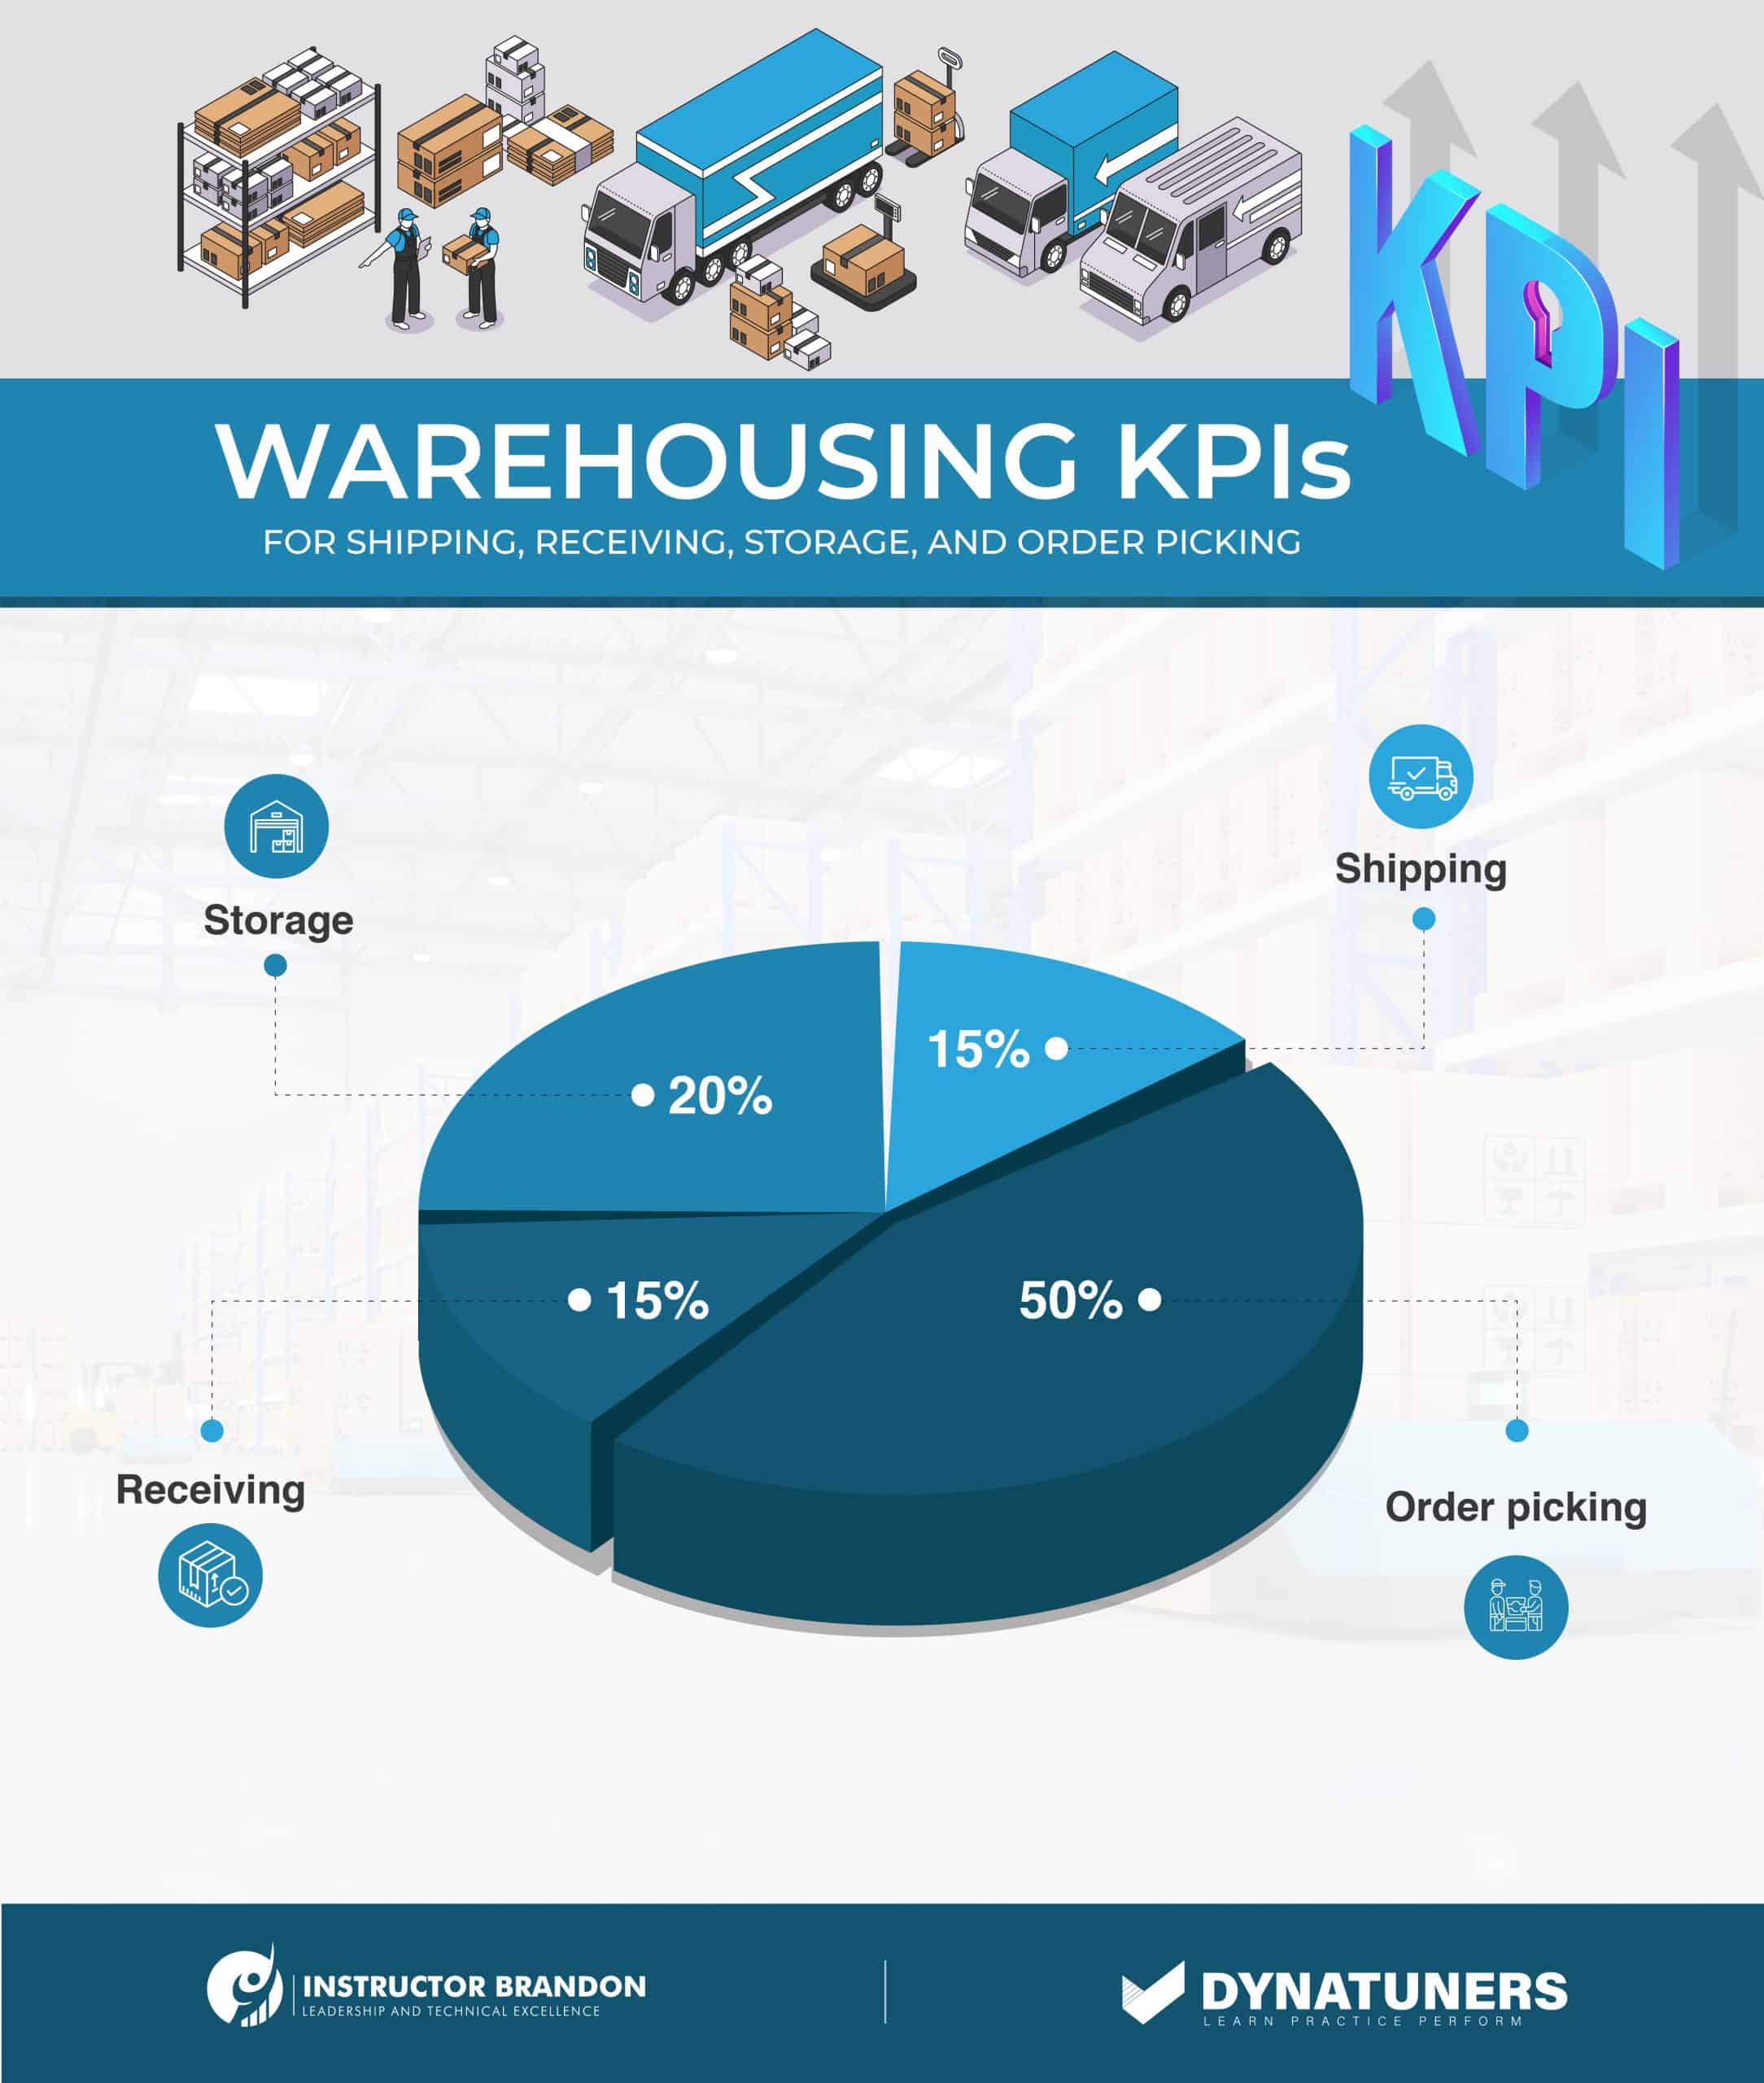 warehousing kpis